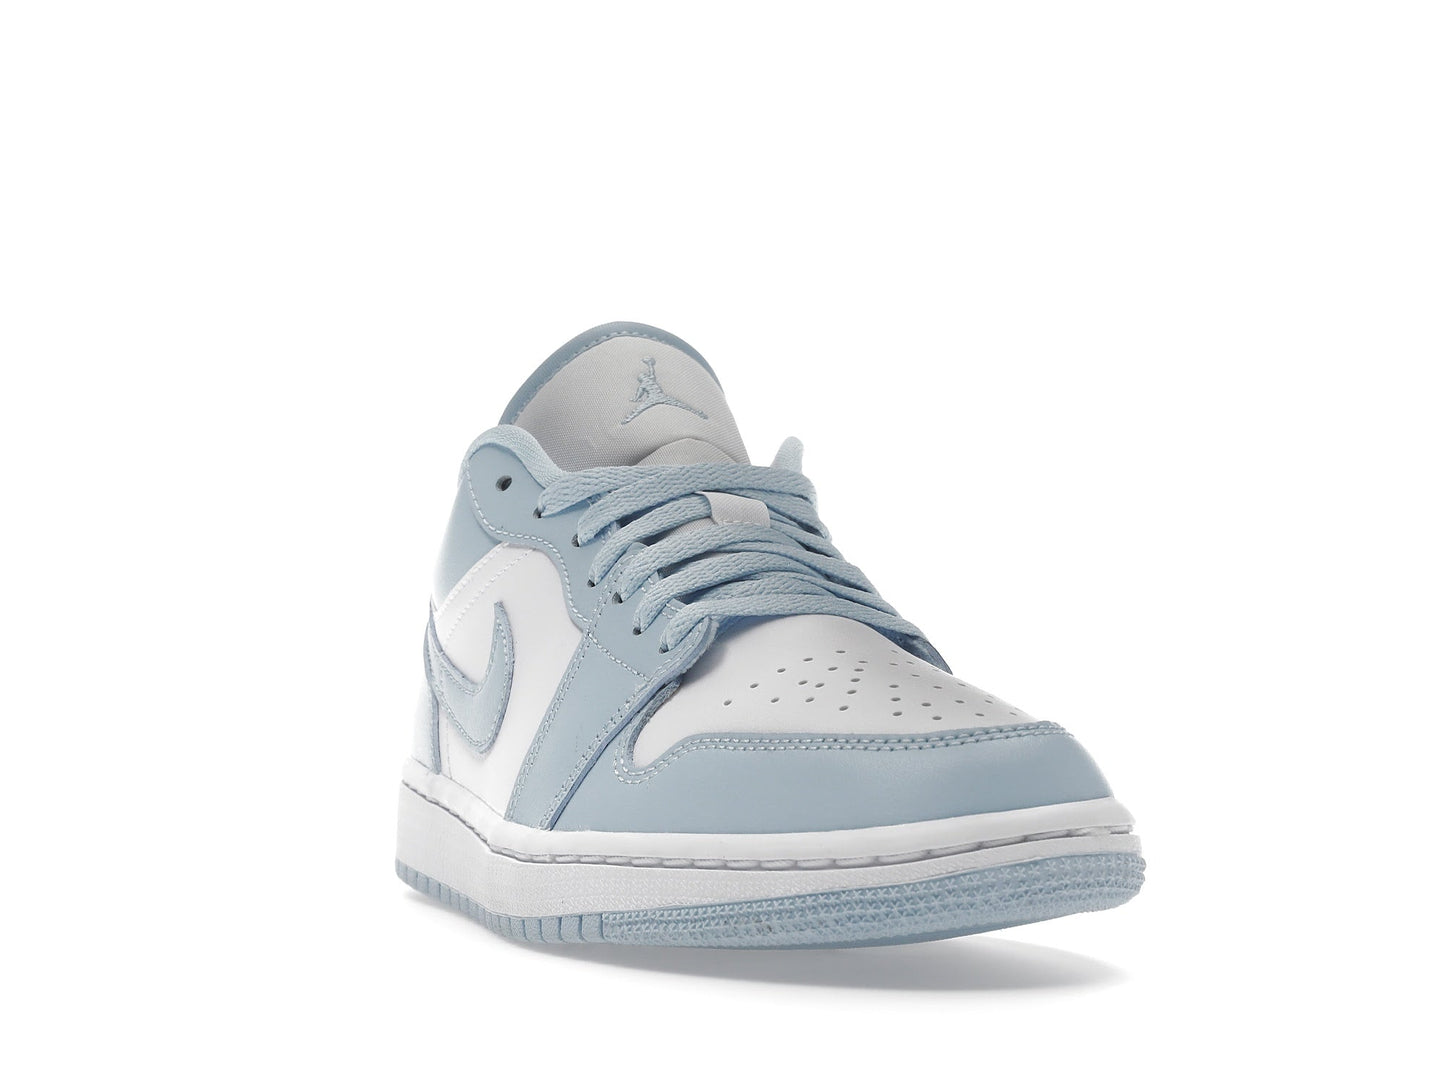 Air Jordan 1 Low White Ice Blue